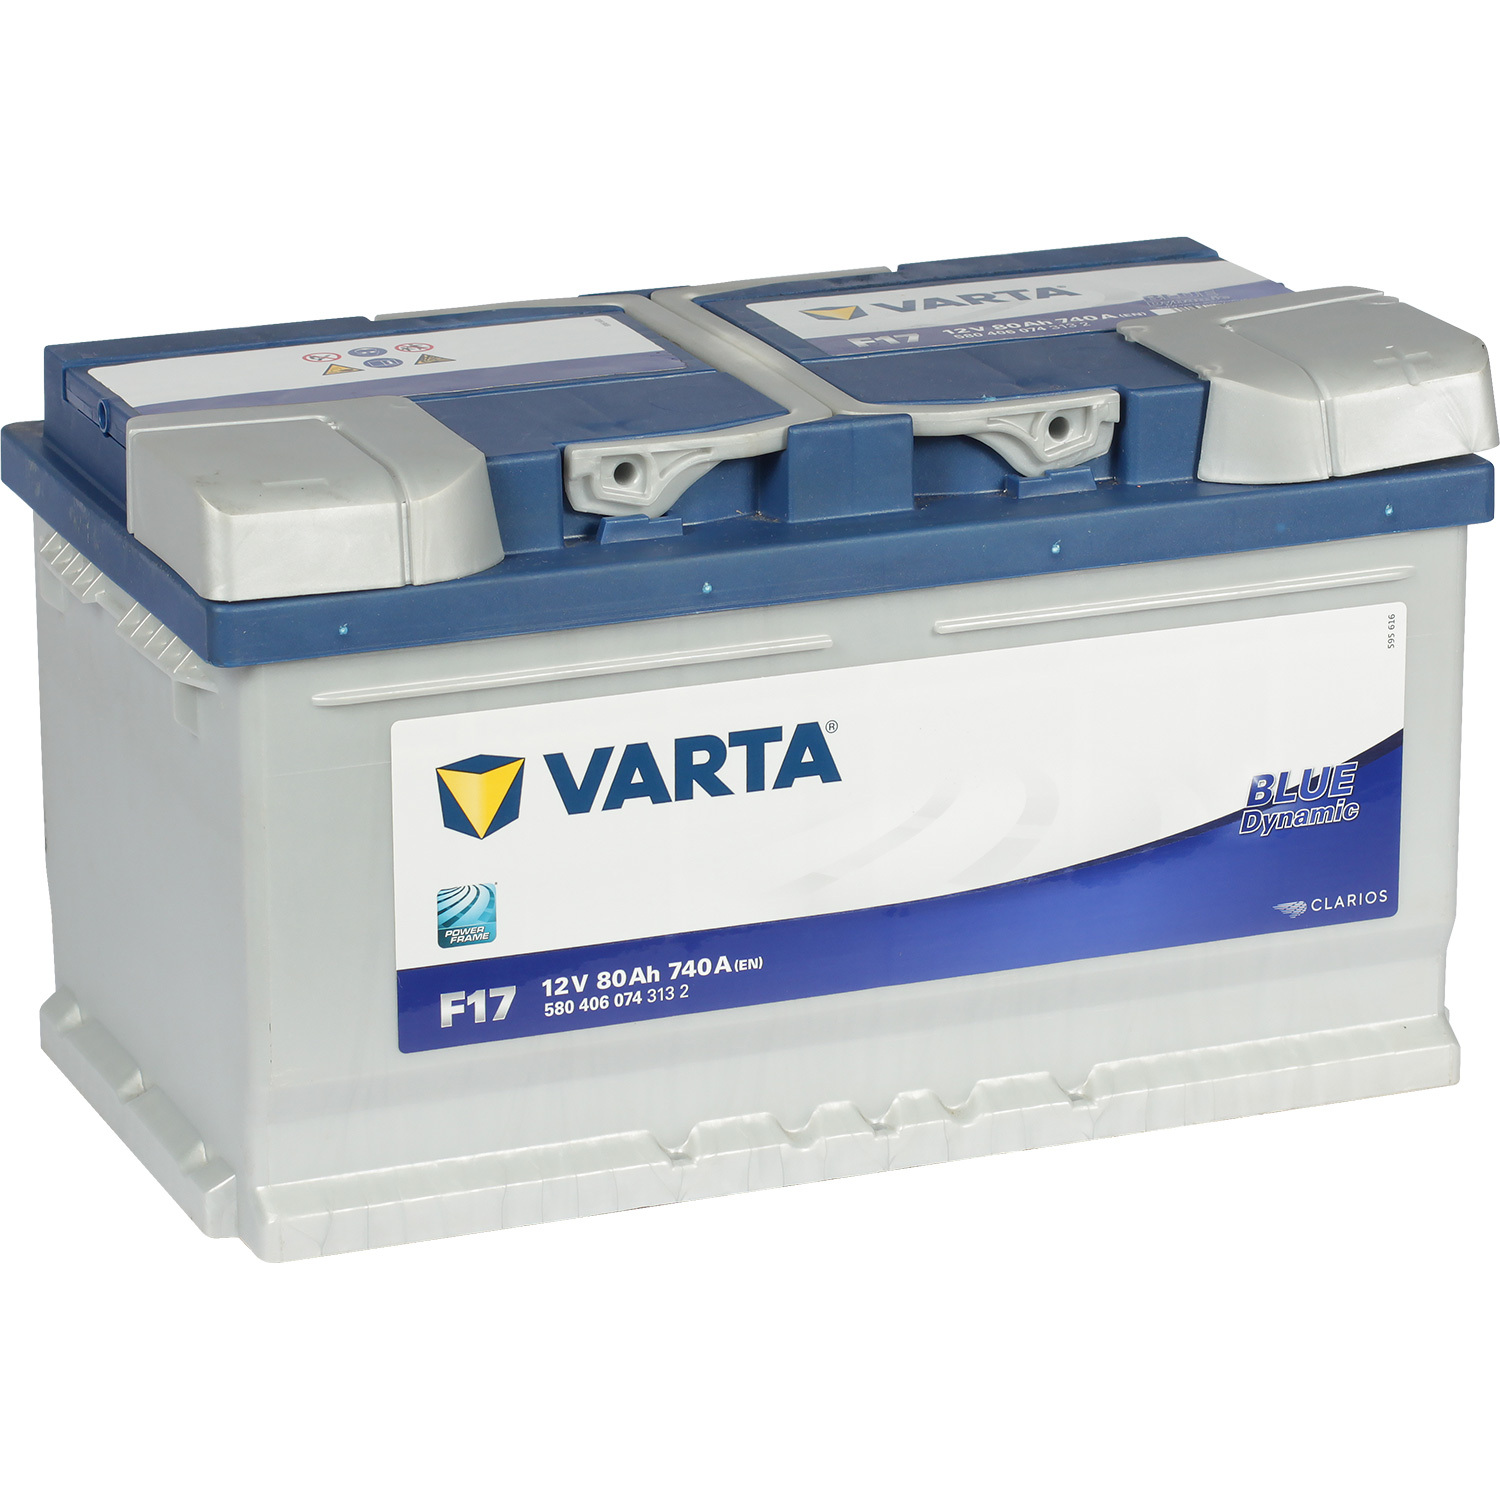 Varta Автомобильный аккумулятор Varta Blue Dynamic F17 80 Ач обратная полярность LB4 varta автомобильный аккумулятор varta 72 ач обратная полярность lb3